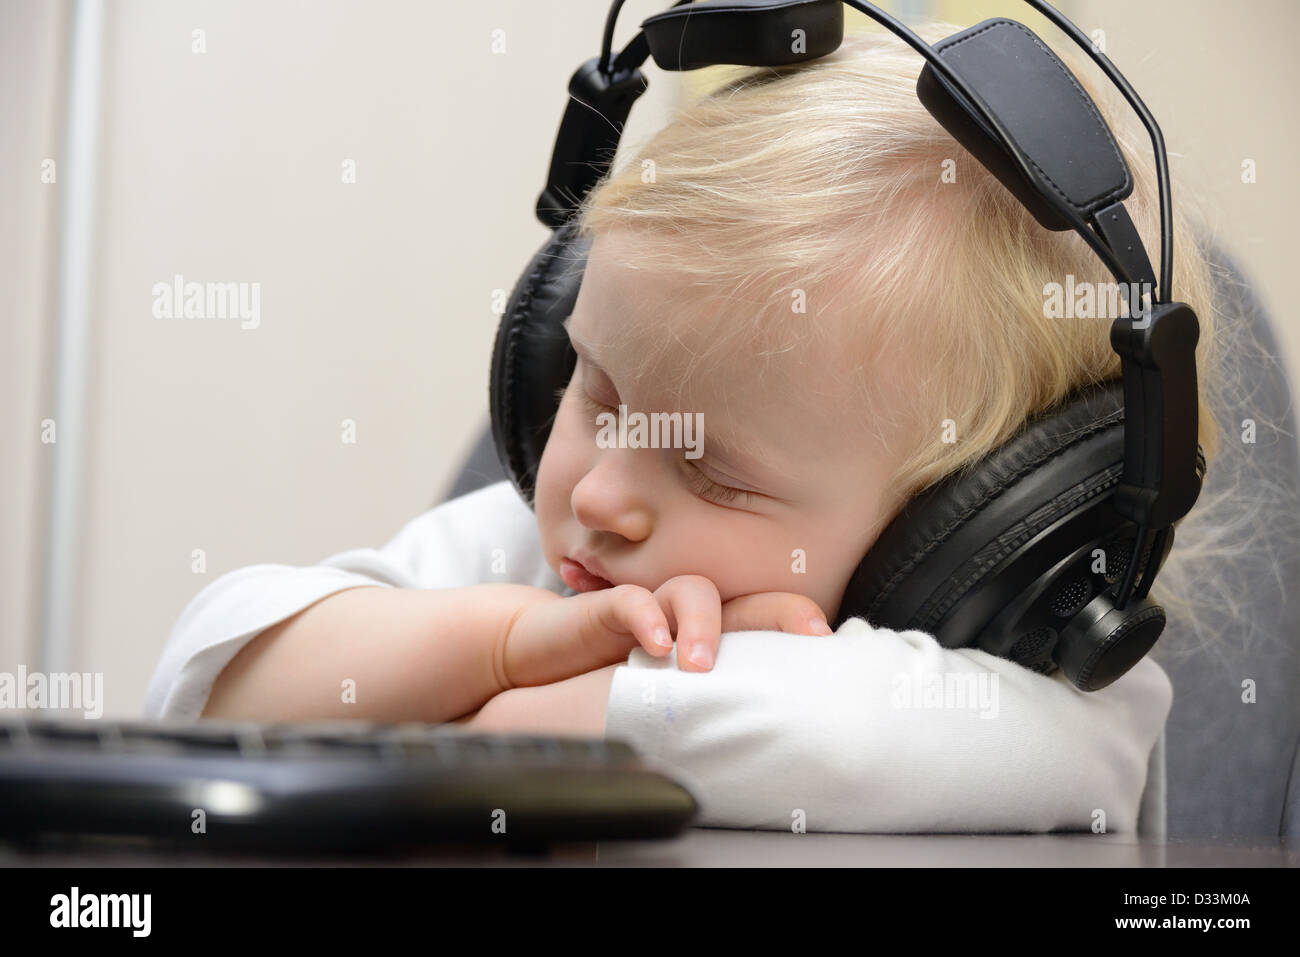 baby sleeps with headphones Stock Photo